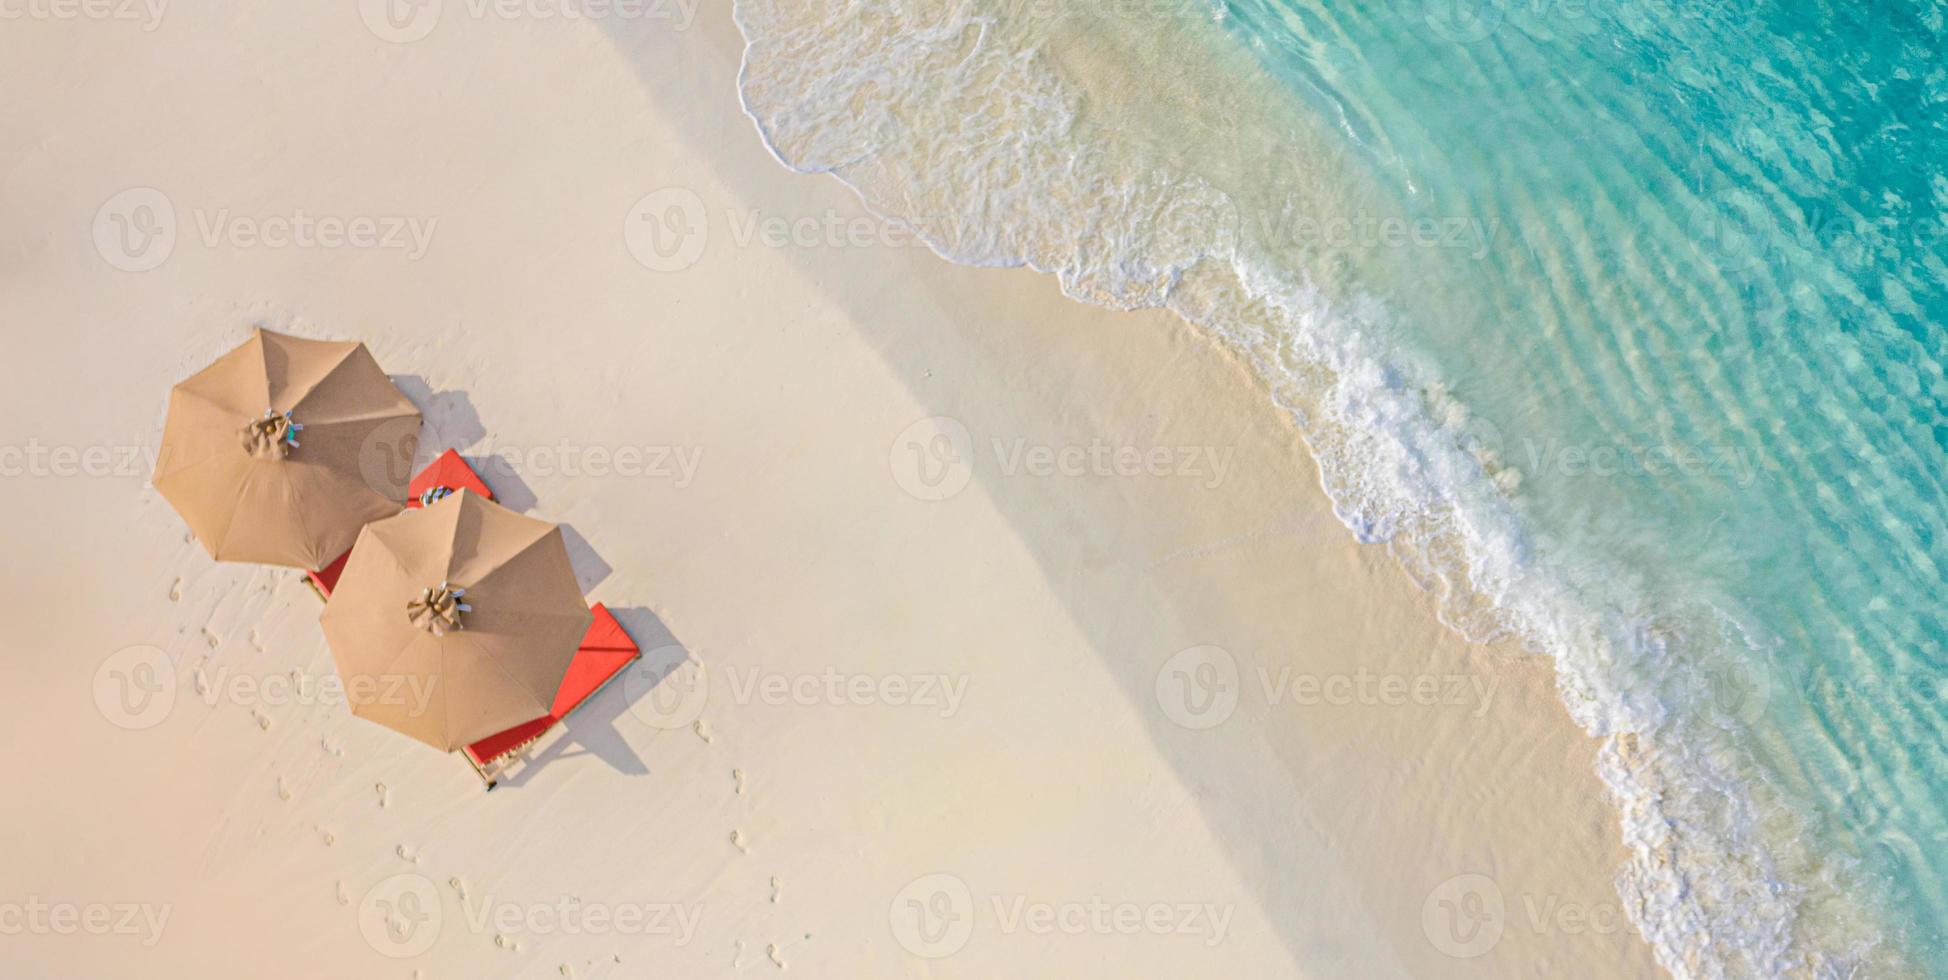 vista aerea della splendida spiaggia con ombrelloni e lettini vicino al mare turchese. vista dall'alto del paesaggio estivo della spiaggia, vacanza idilliaca di coppia ispiratrice, vacanza romantica. viaggio in libertà foto